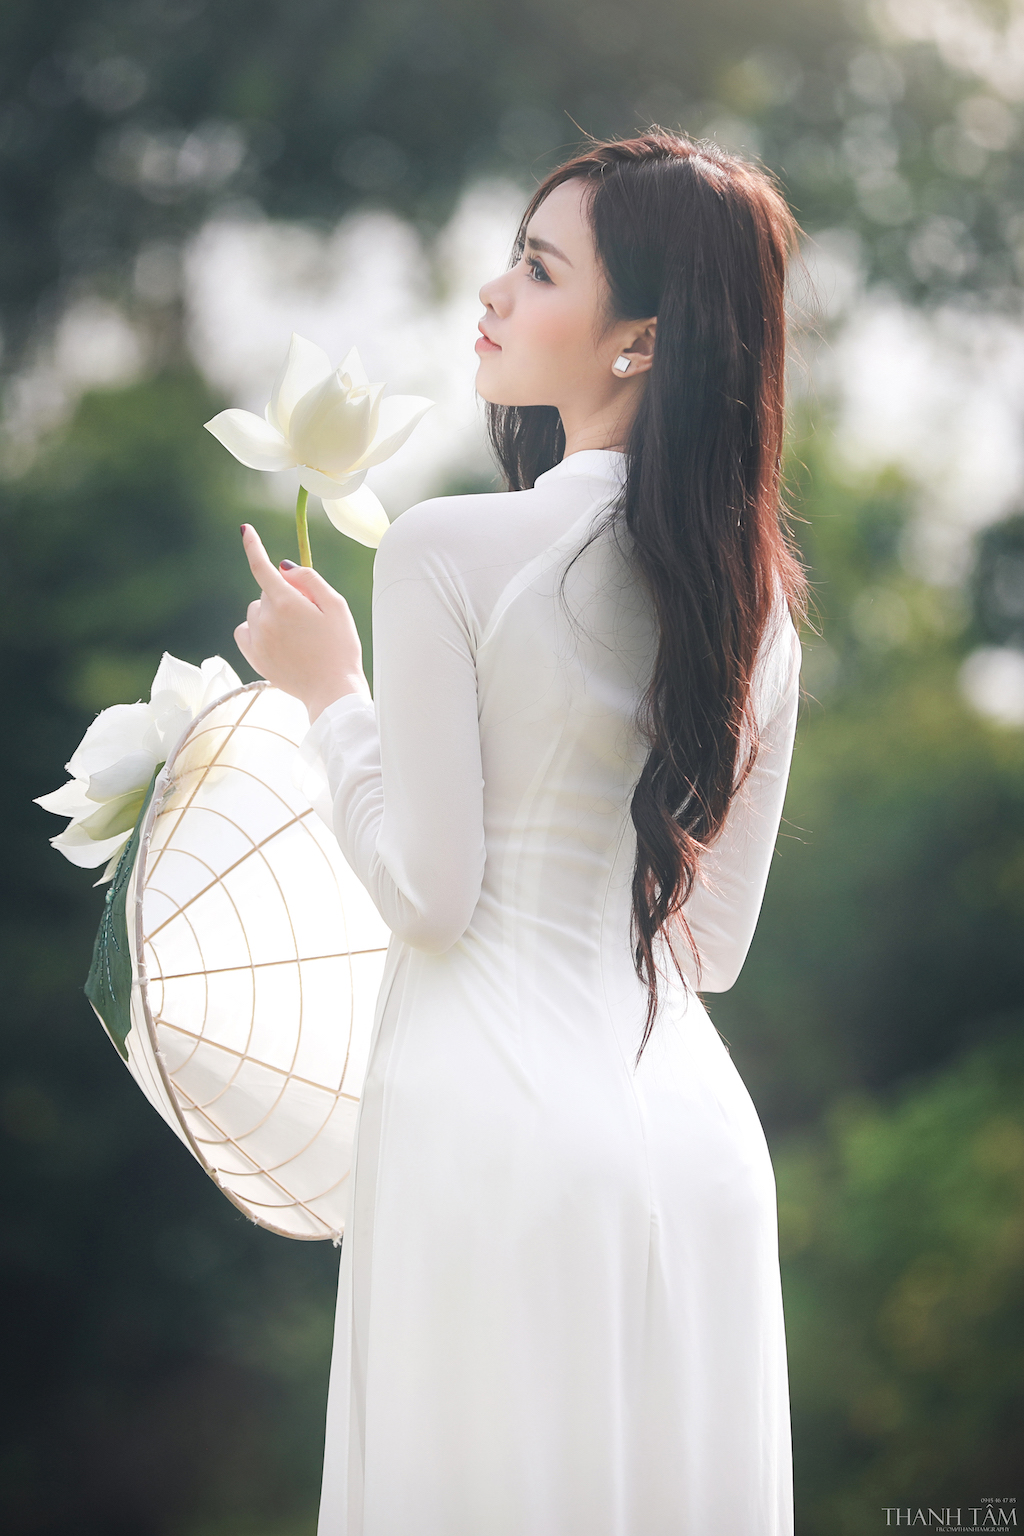 Hoa sen là biểu tượng của sự thanh lịch và tinh tế trong văn hóa Việt Nam. Xem bức ảnh về hoa sen sẽ giúp bạn hiểu thêm về ý nghĩa của loài hoa này trong văn hóa, đồng thời trải nghiệm vẻ đẹp thật sự của nó.